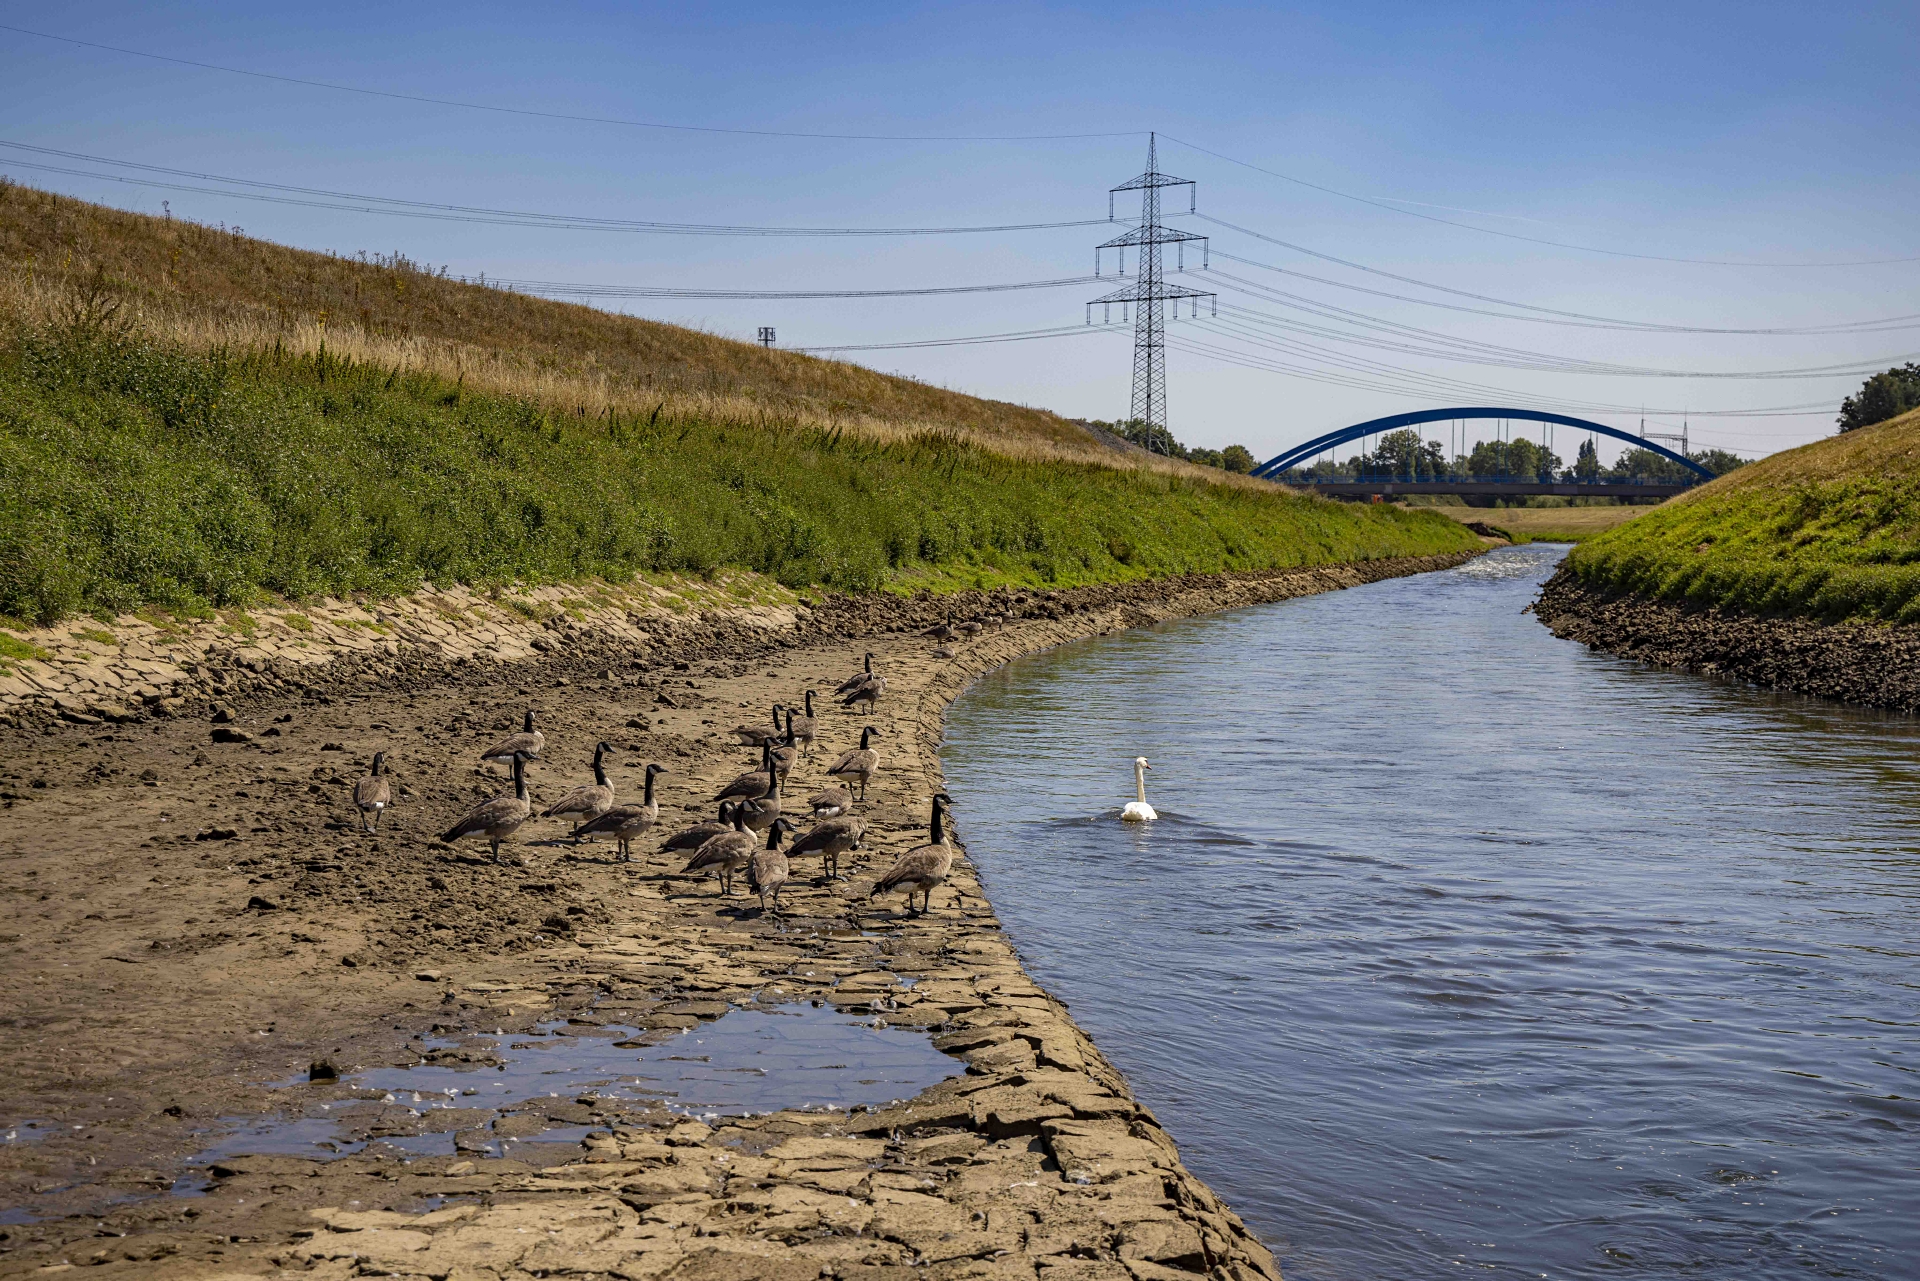 Trockenster Sommer in Emscher-Lippe-Region seit 1931 – Doch „leichte Entwarnung“ für beide großen Flüsse